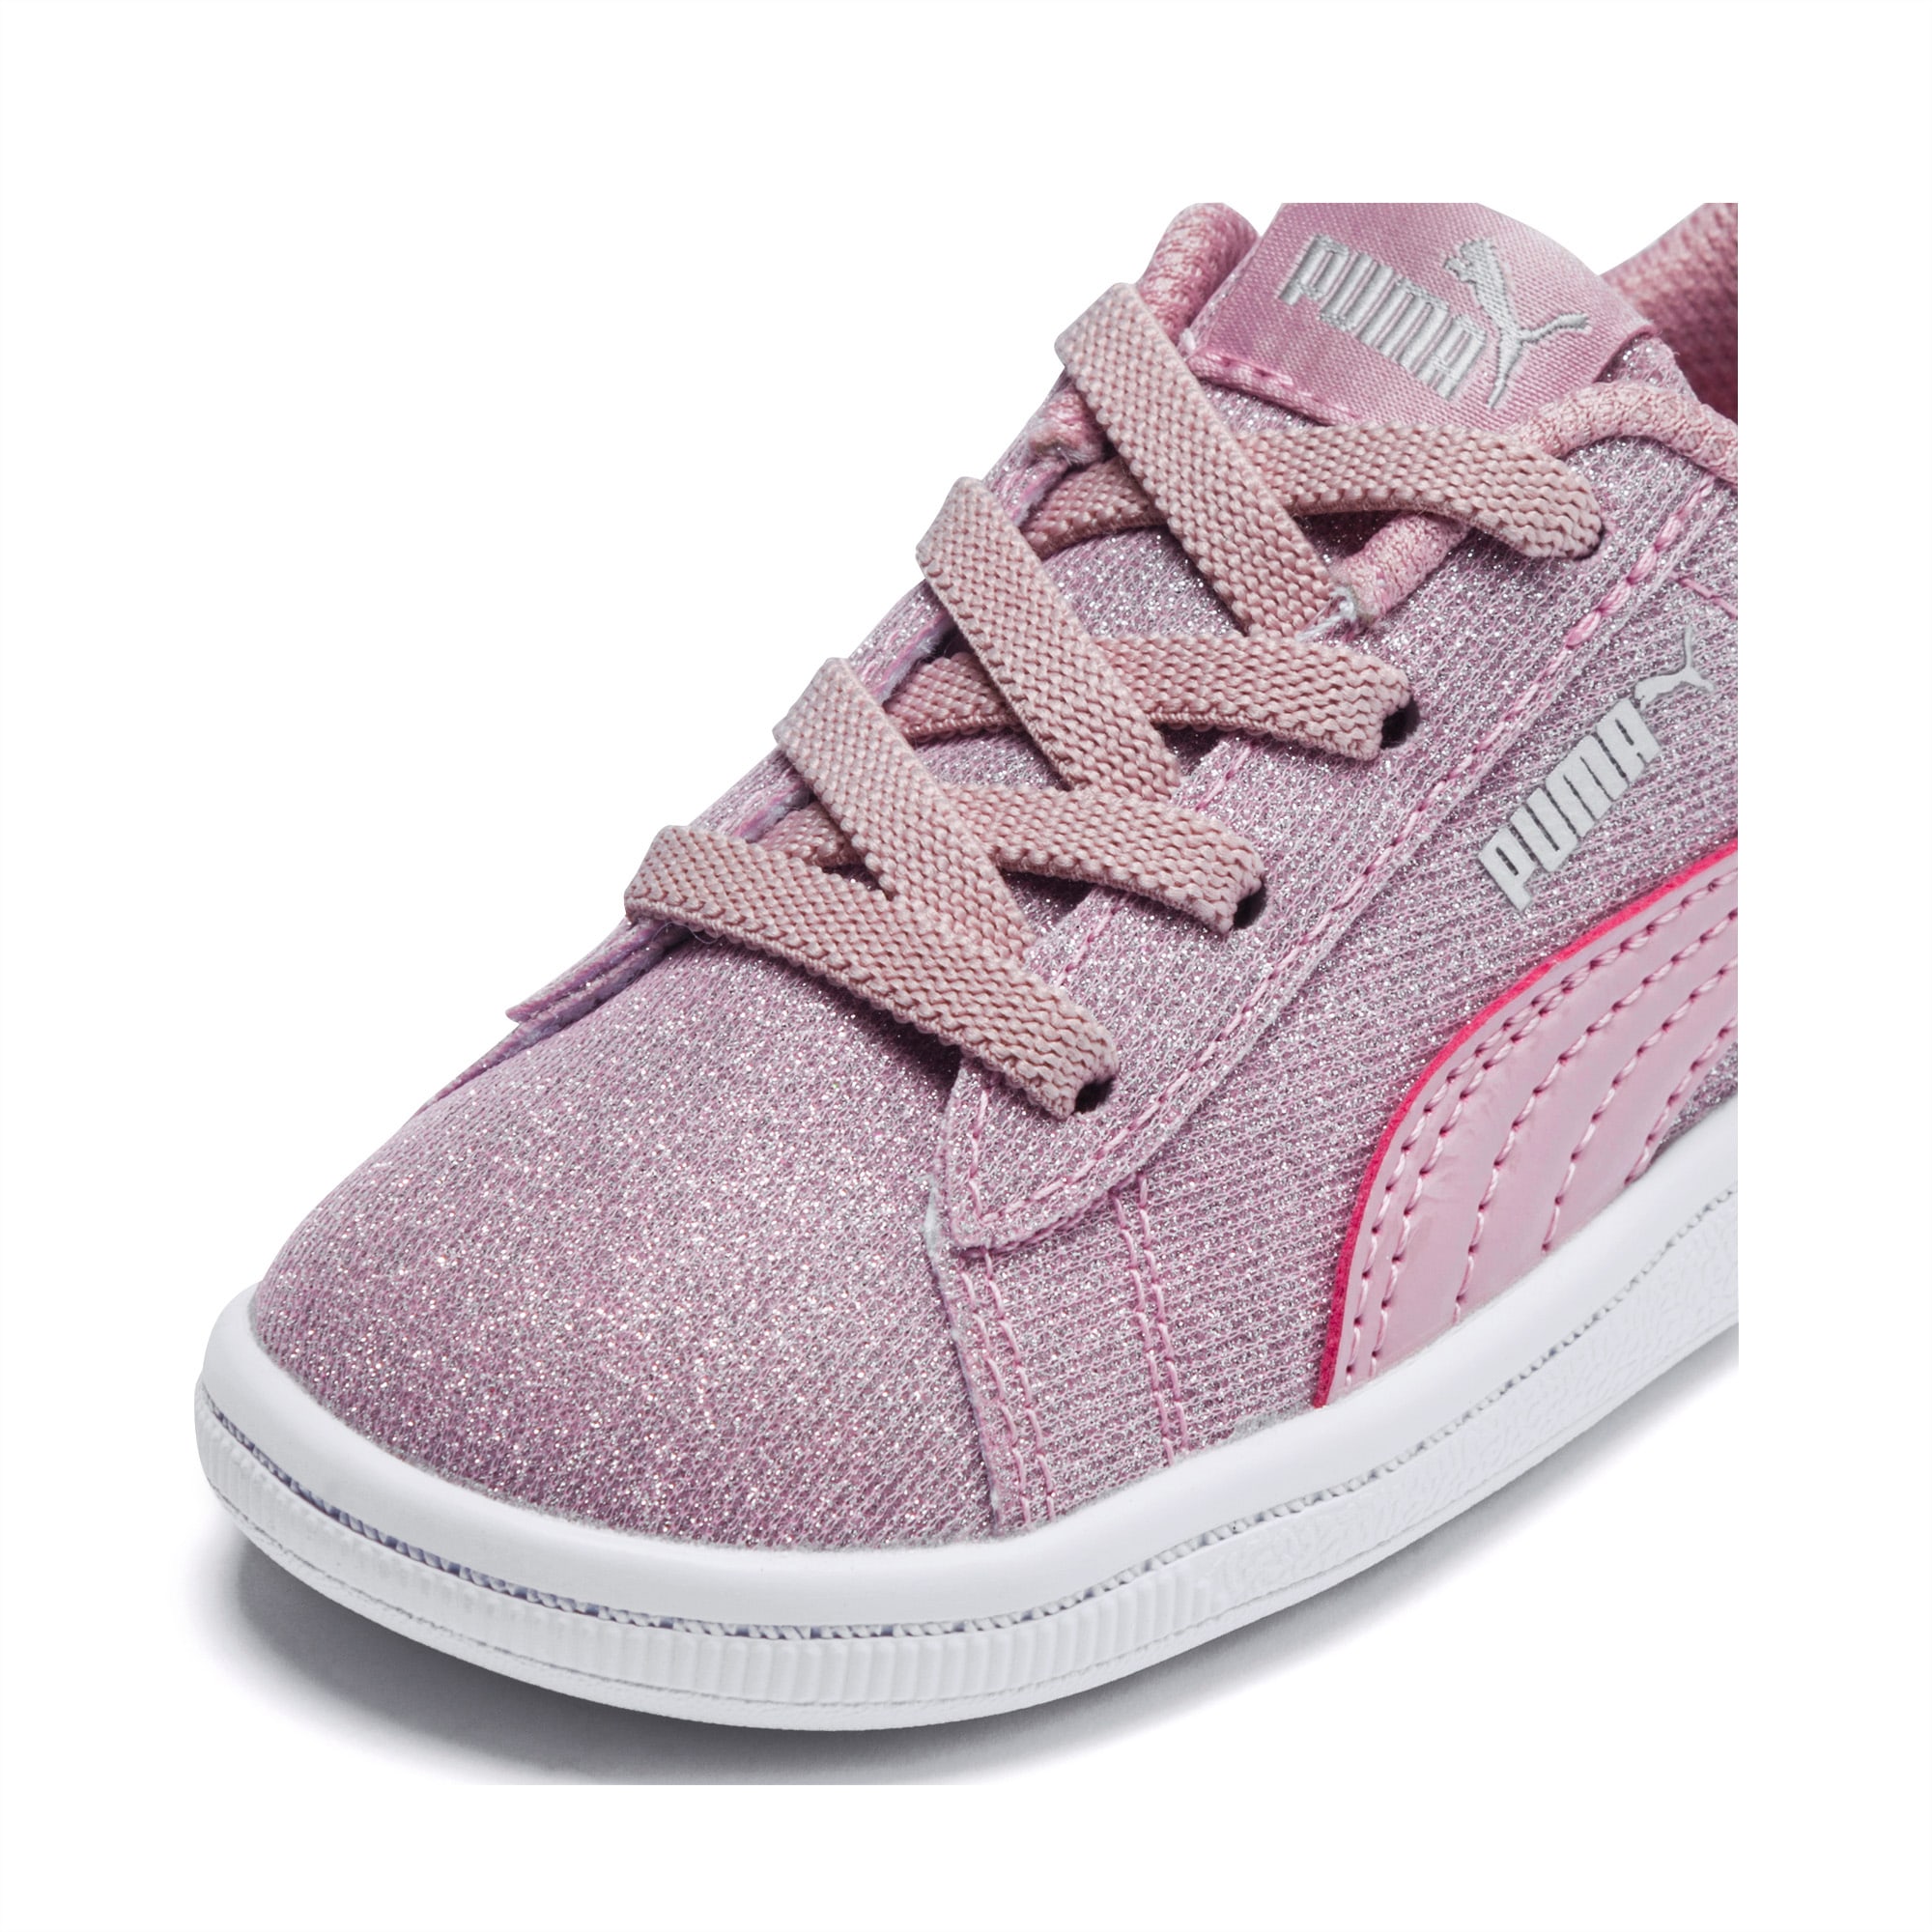 PUMA Vikky Glitz AC Toddler Shoes | PUMA US